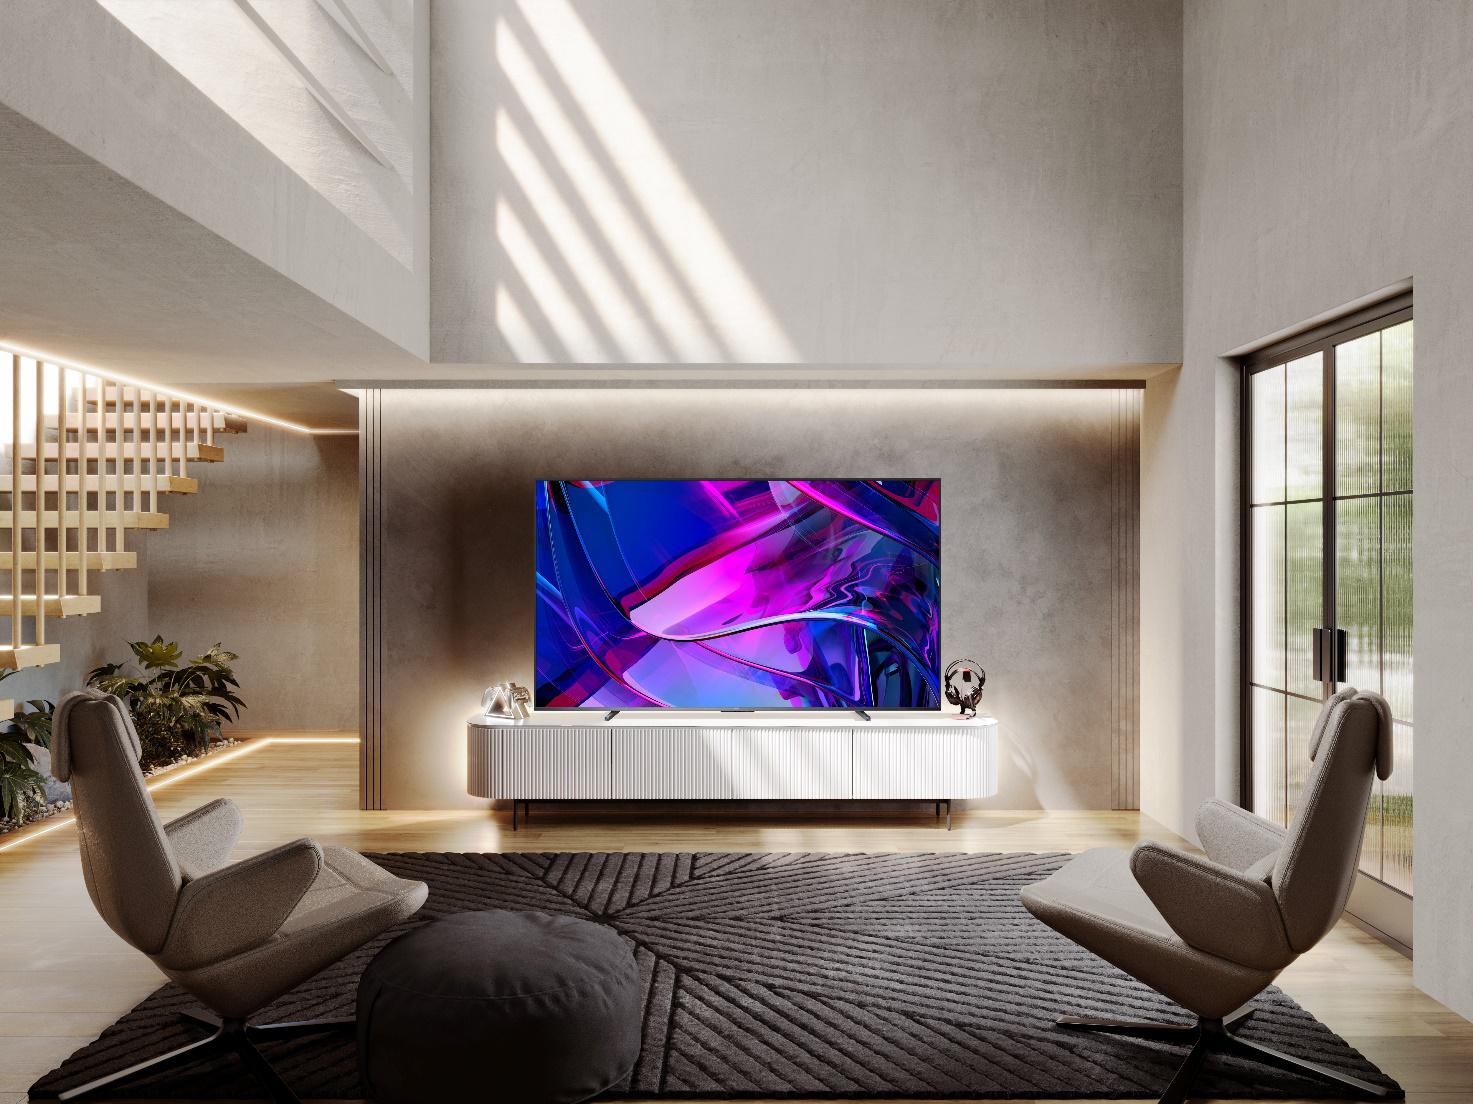 Hisense, Qled teknolojisine ve 100 inç ekrana sahip devrim niteliğinde TV'yi tanıtıyor